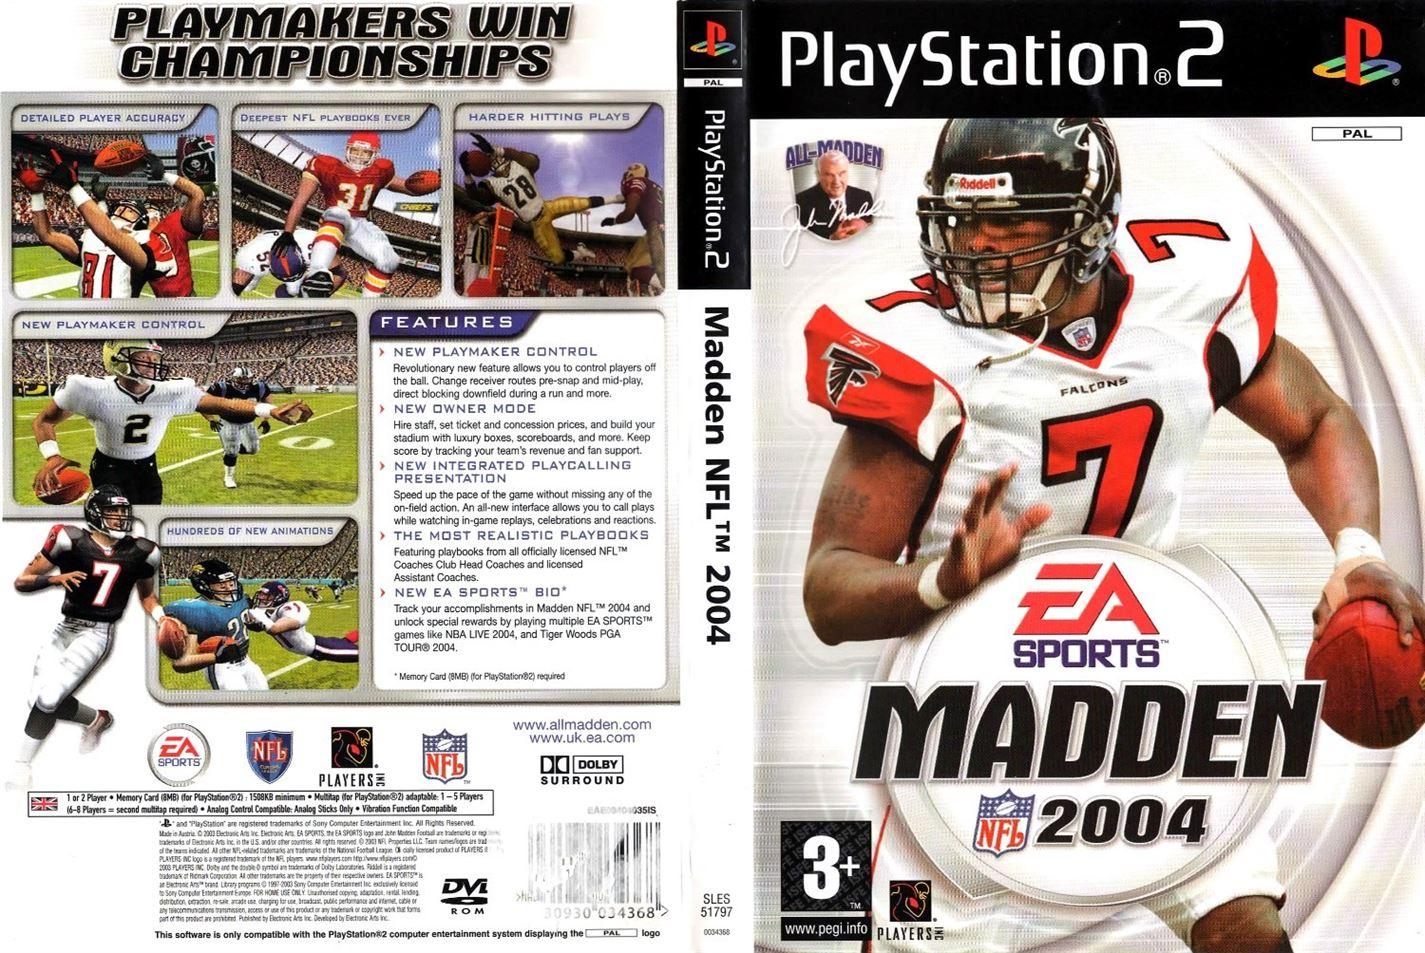 Madden NFL 2004 PS2 (Playstation 2) - UK Seller